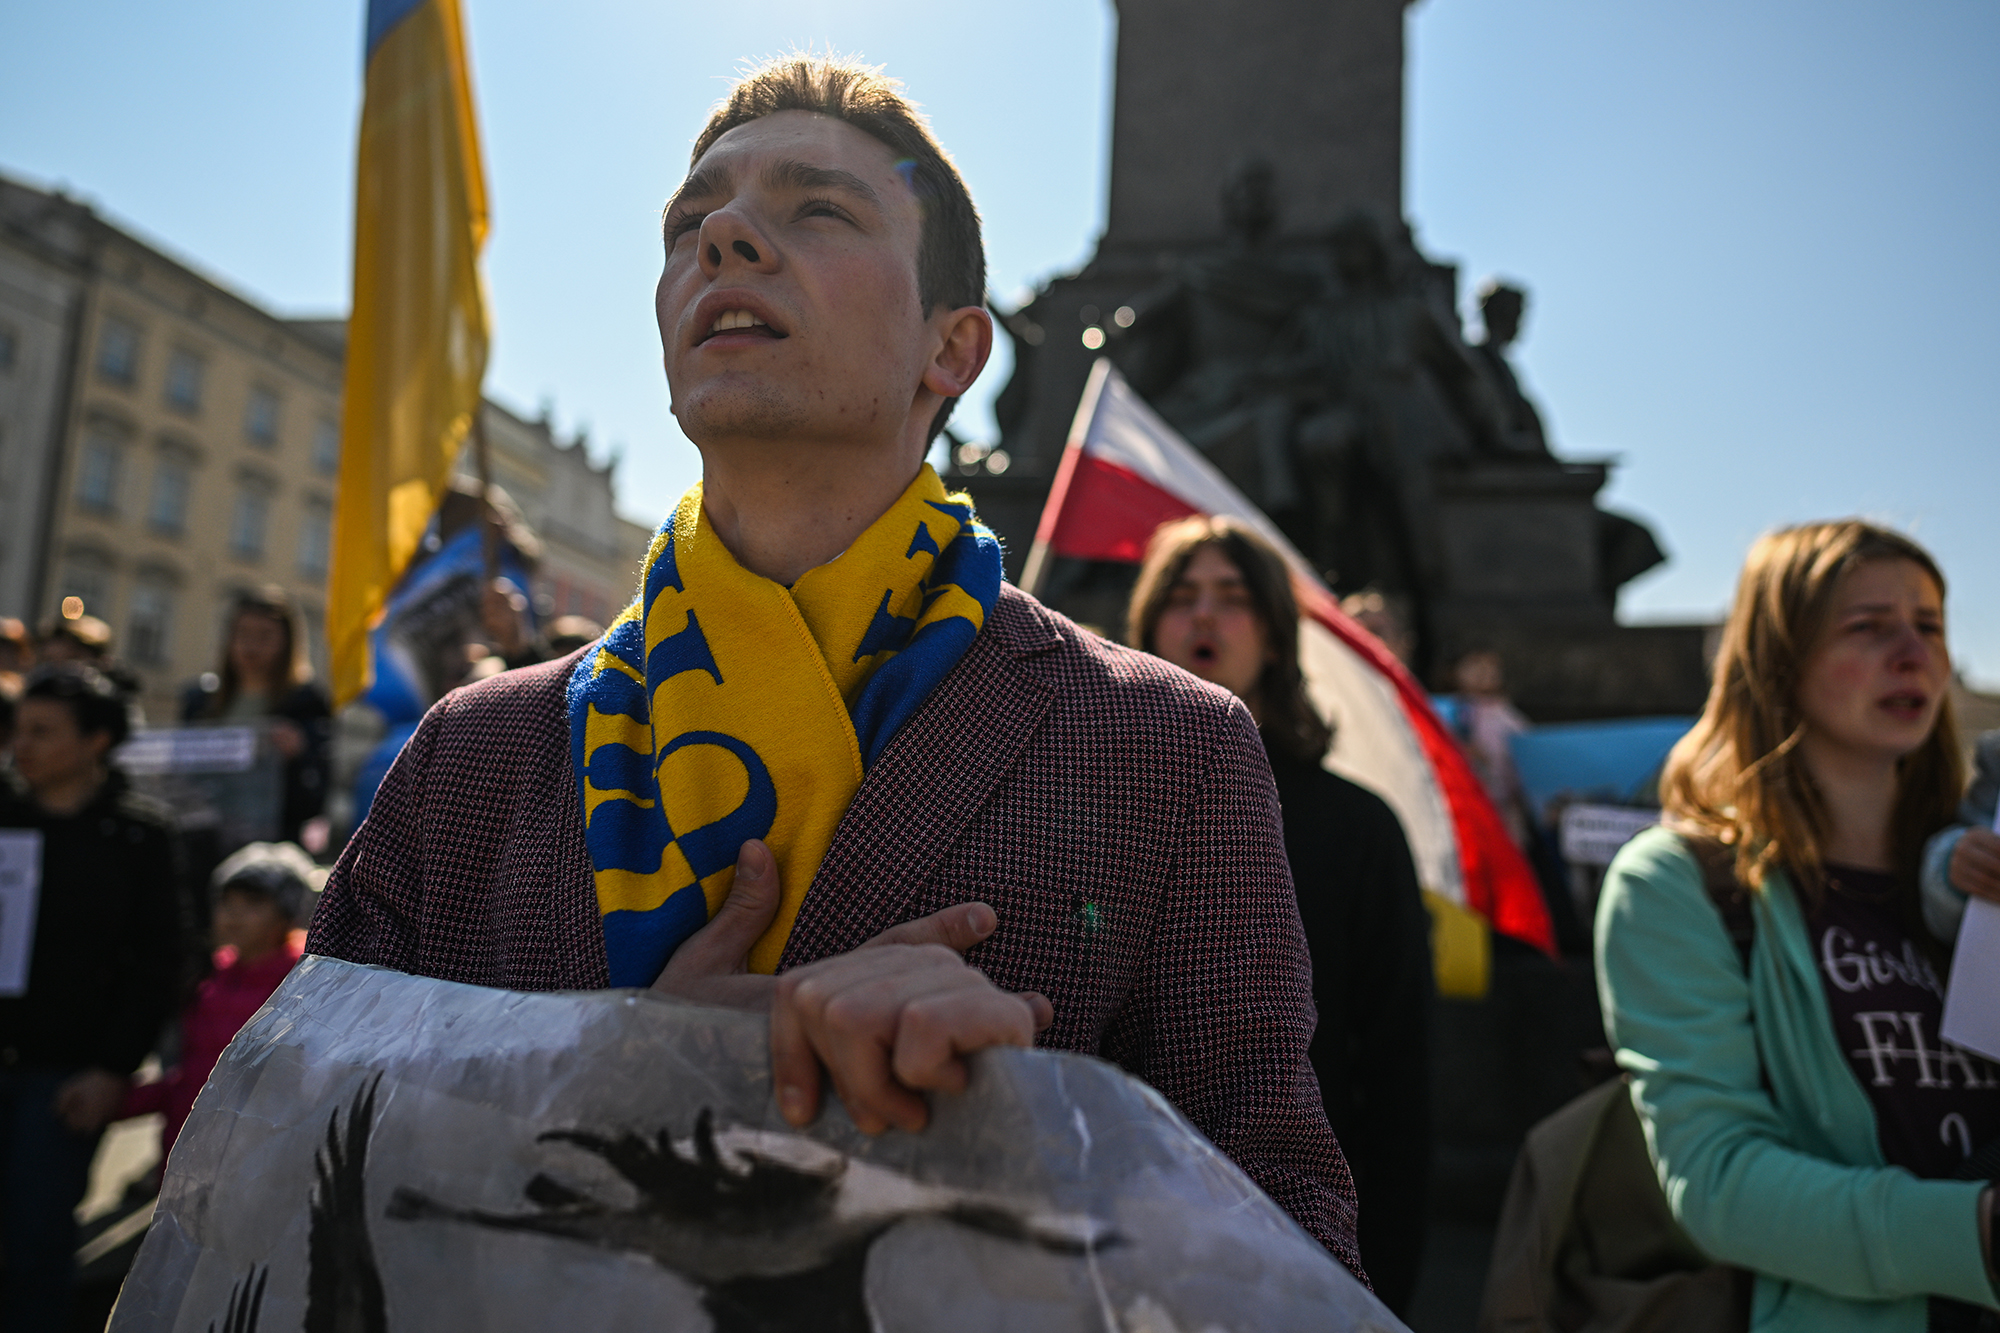 Изменения в закон. Кому из украинцев грозит депортация из Польши